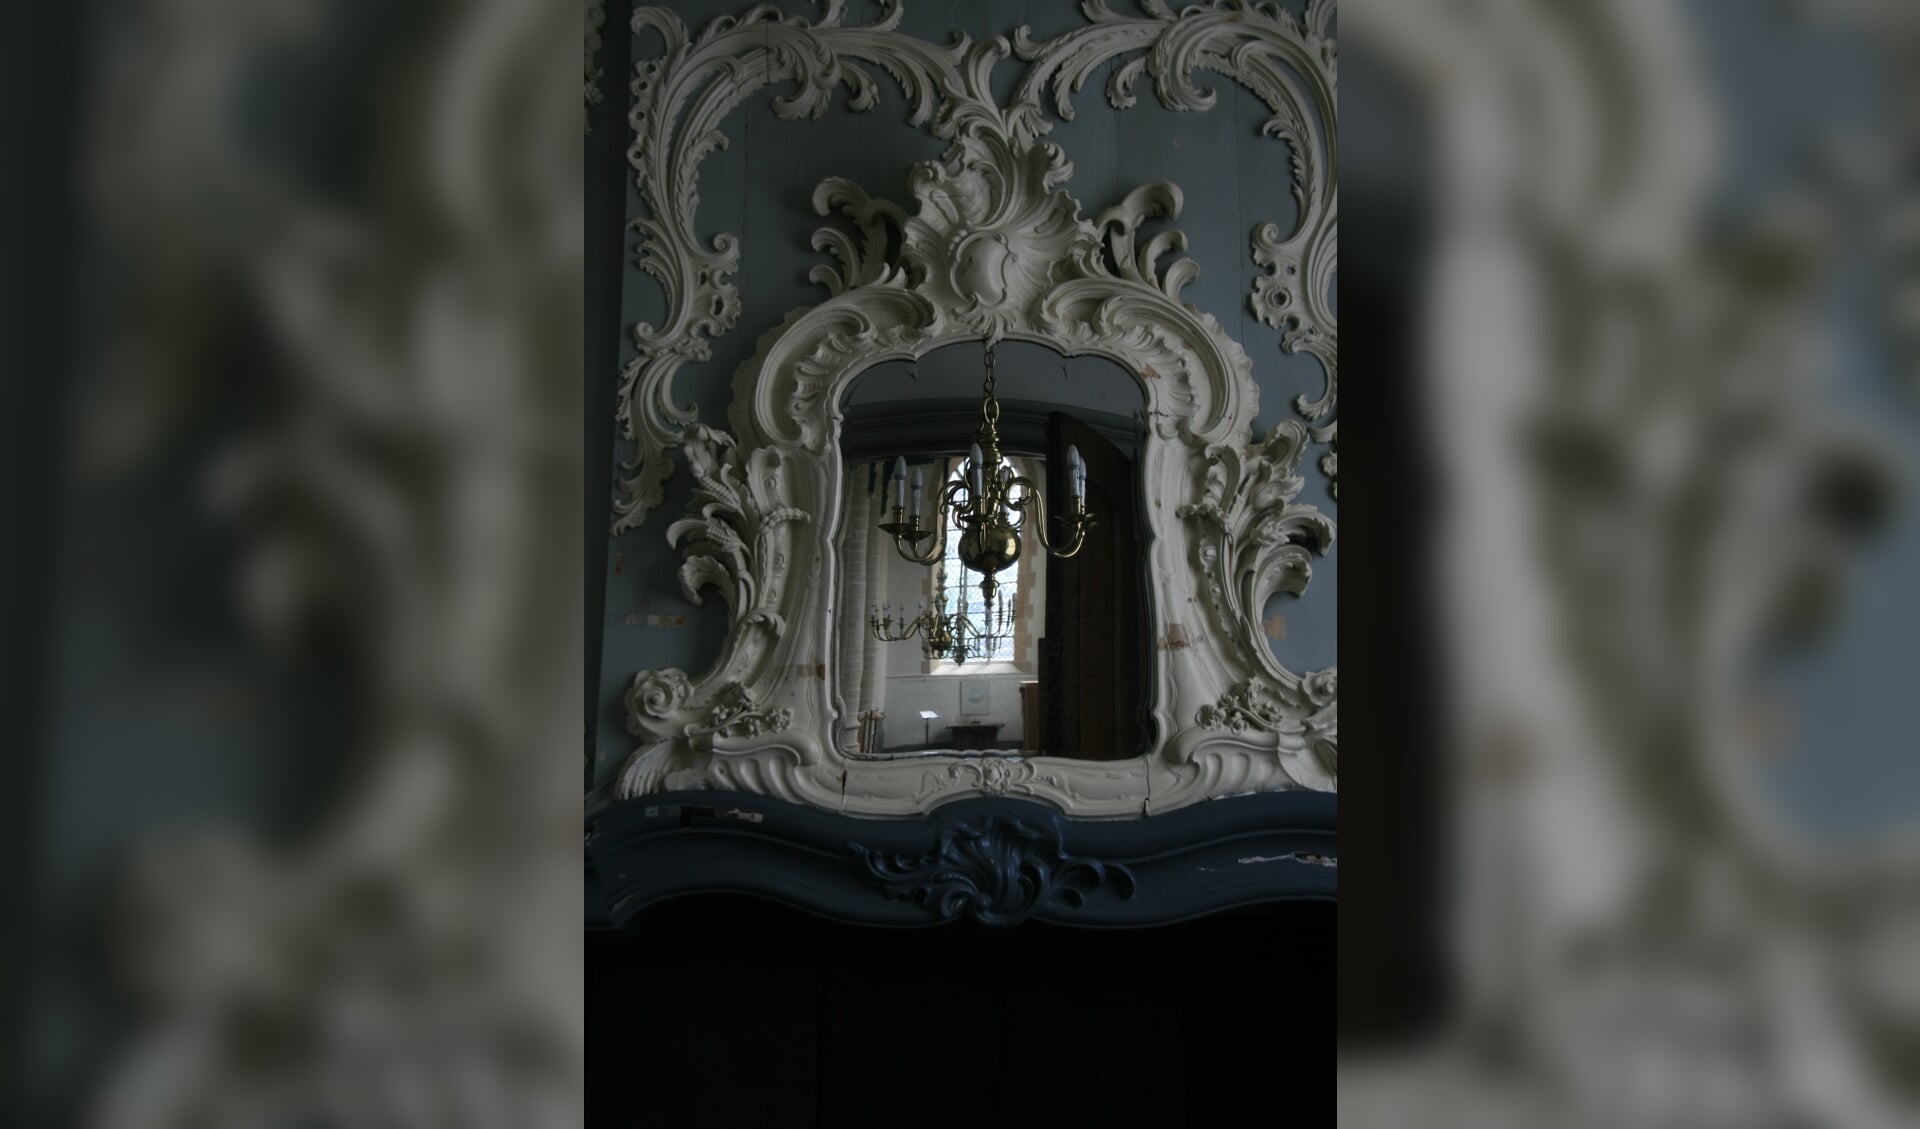 De spiegel boven de schouw in de consistoriekamer is heel bijzonder.